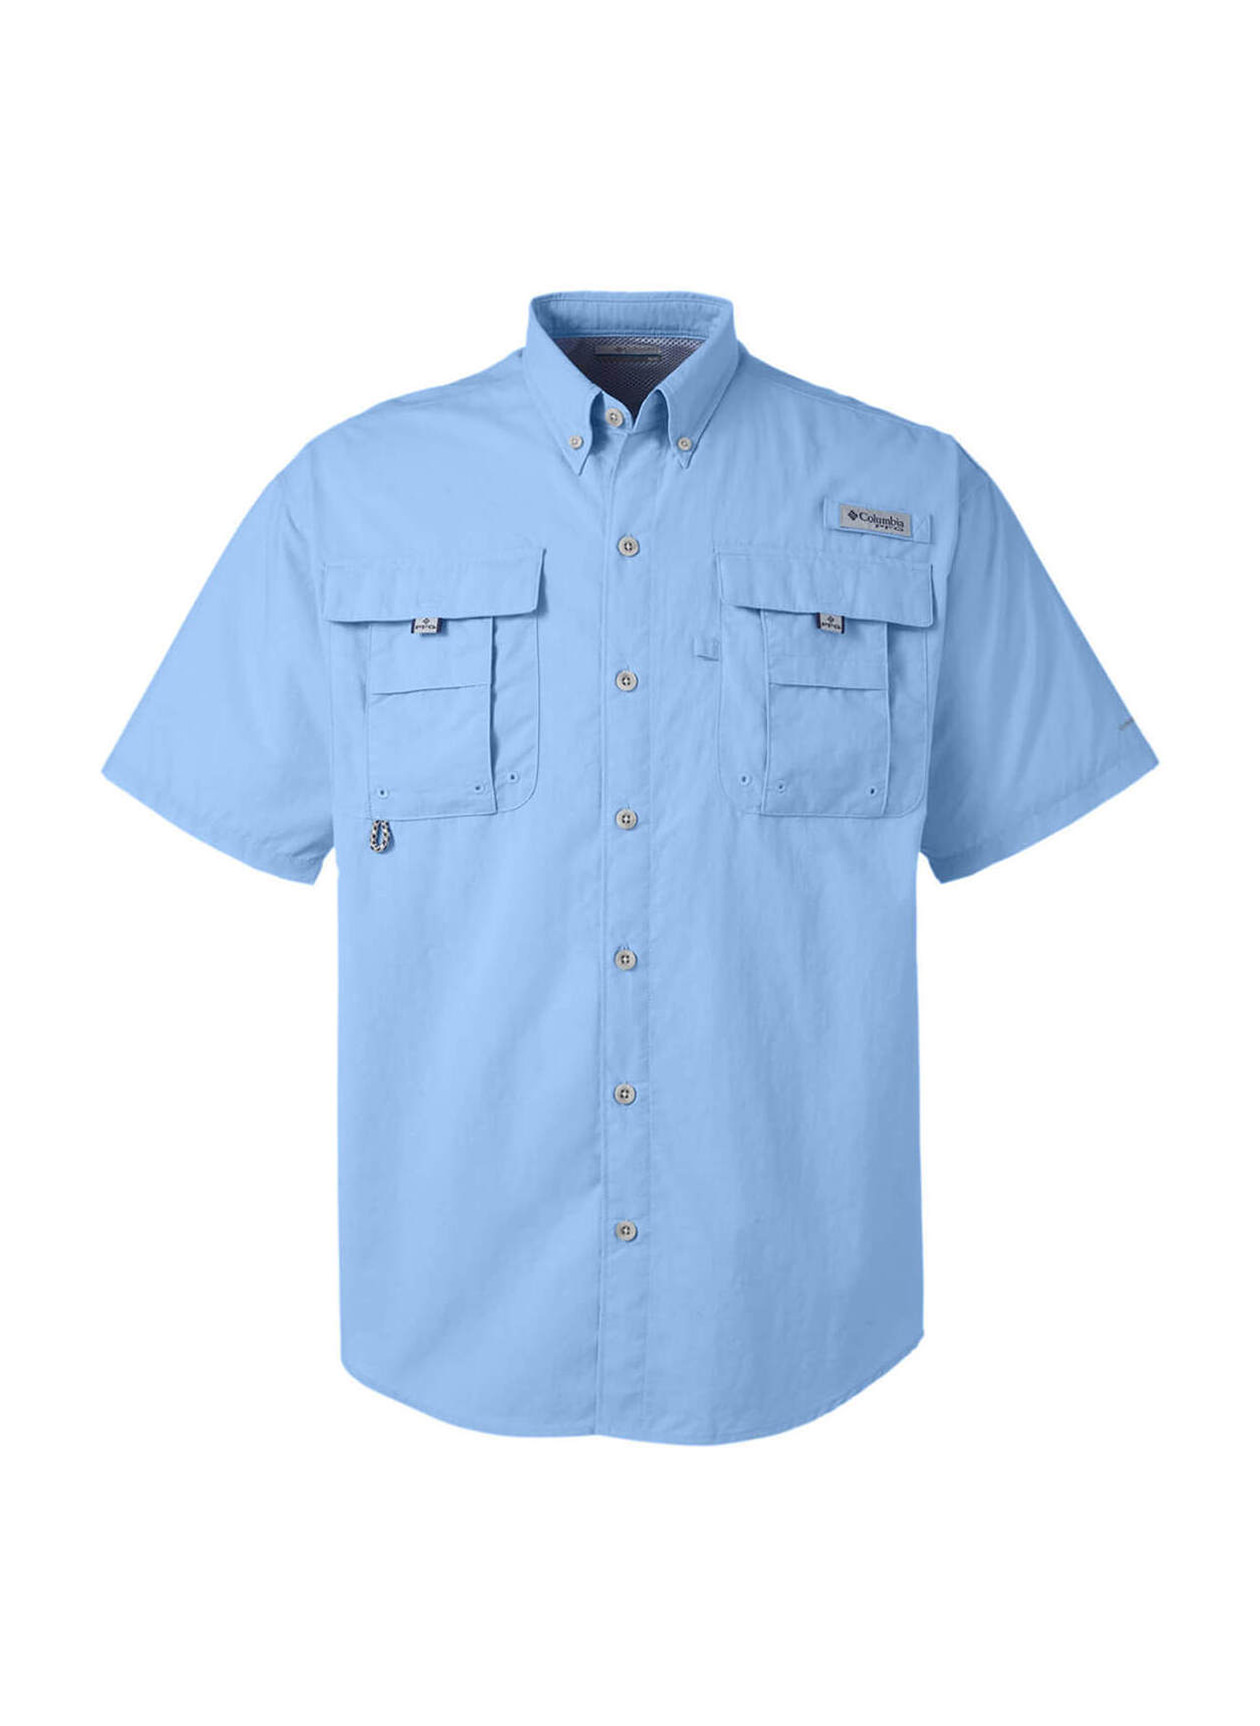 Printed Columbia Men's Sail Bahama Short-Sleeve Shirt